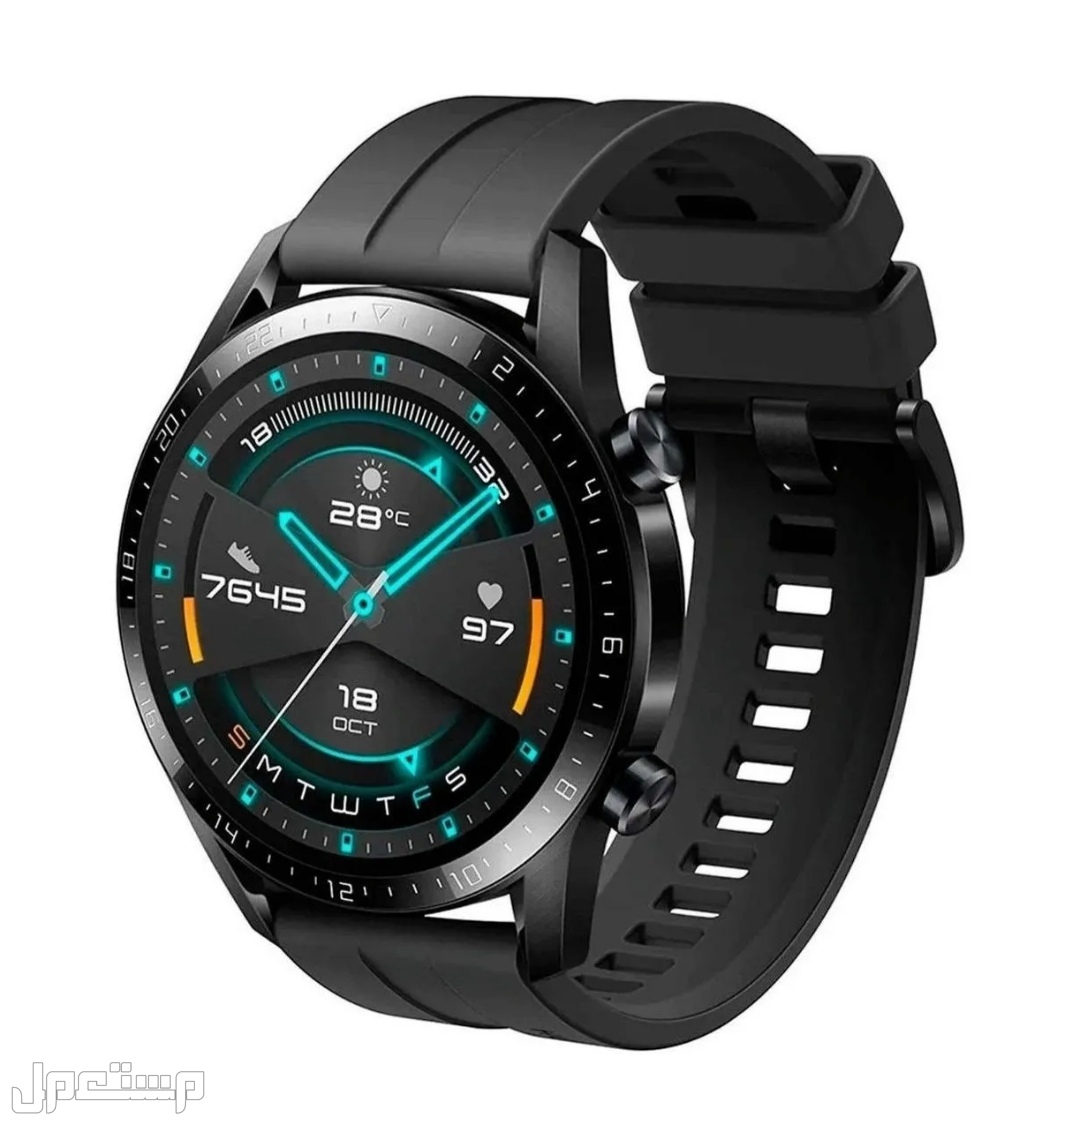 تعرف على أفضل ساعات ذكية للدراسة والعمل في سوريا Huawei Watch GT 2 Sport 1.39 "46mm